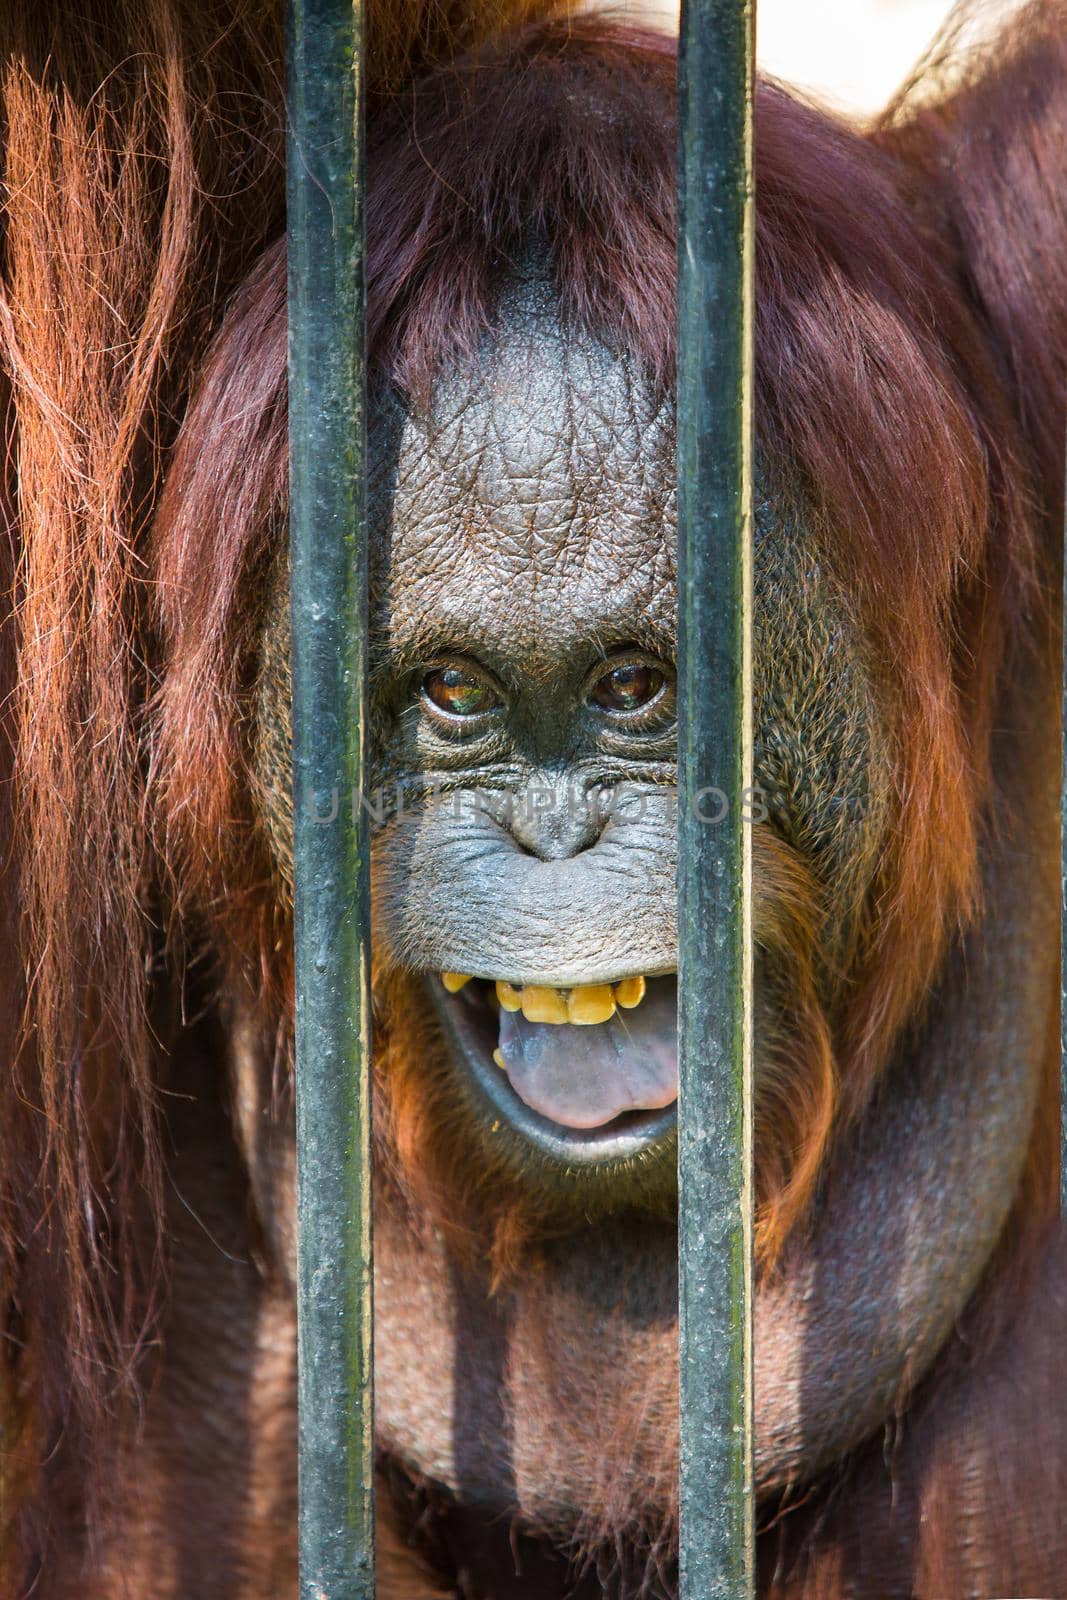 Orangutan in the cage